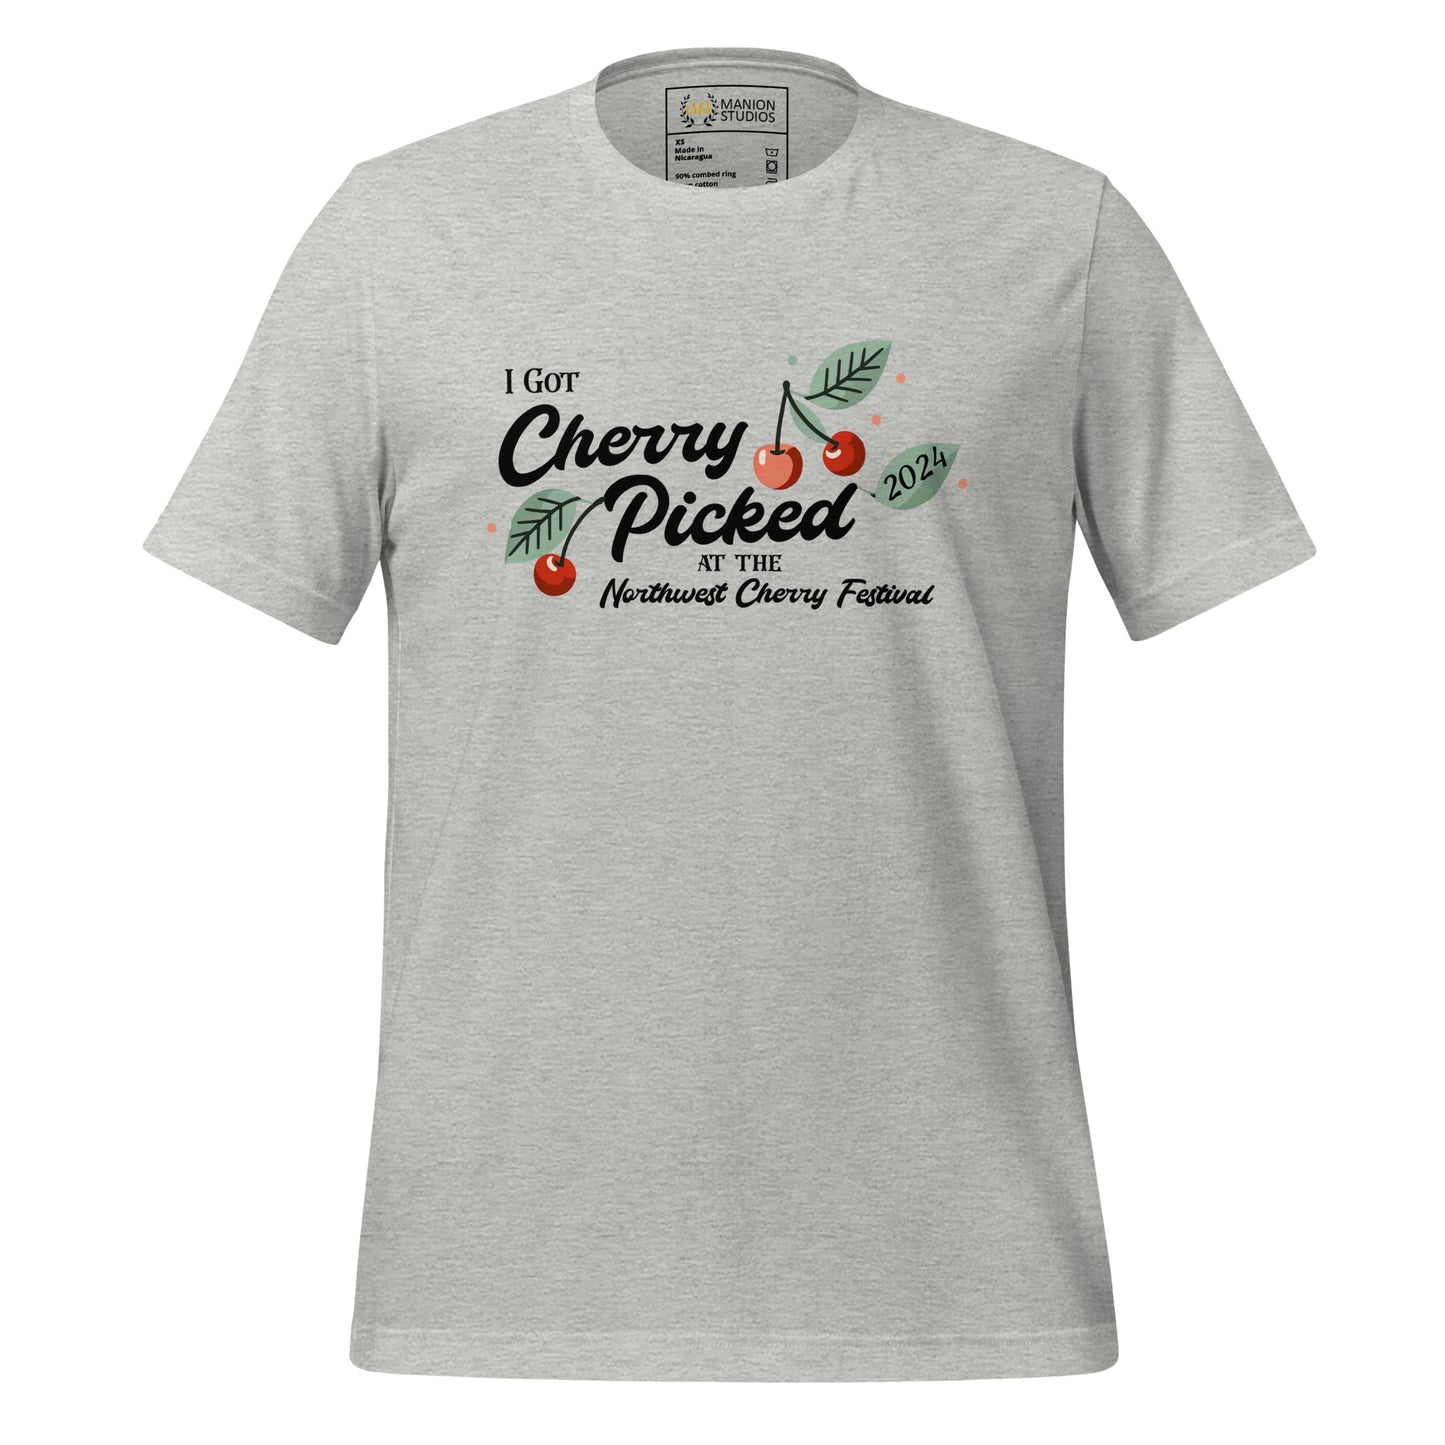 "I Got Cherry Picked" Manion Studios - Unisex t-shirt